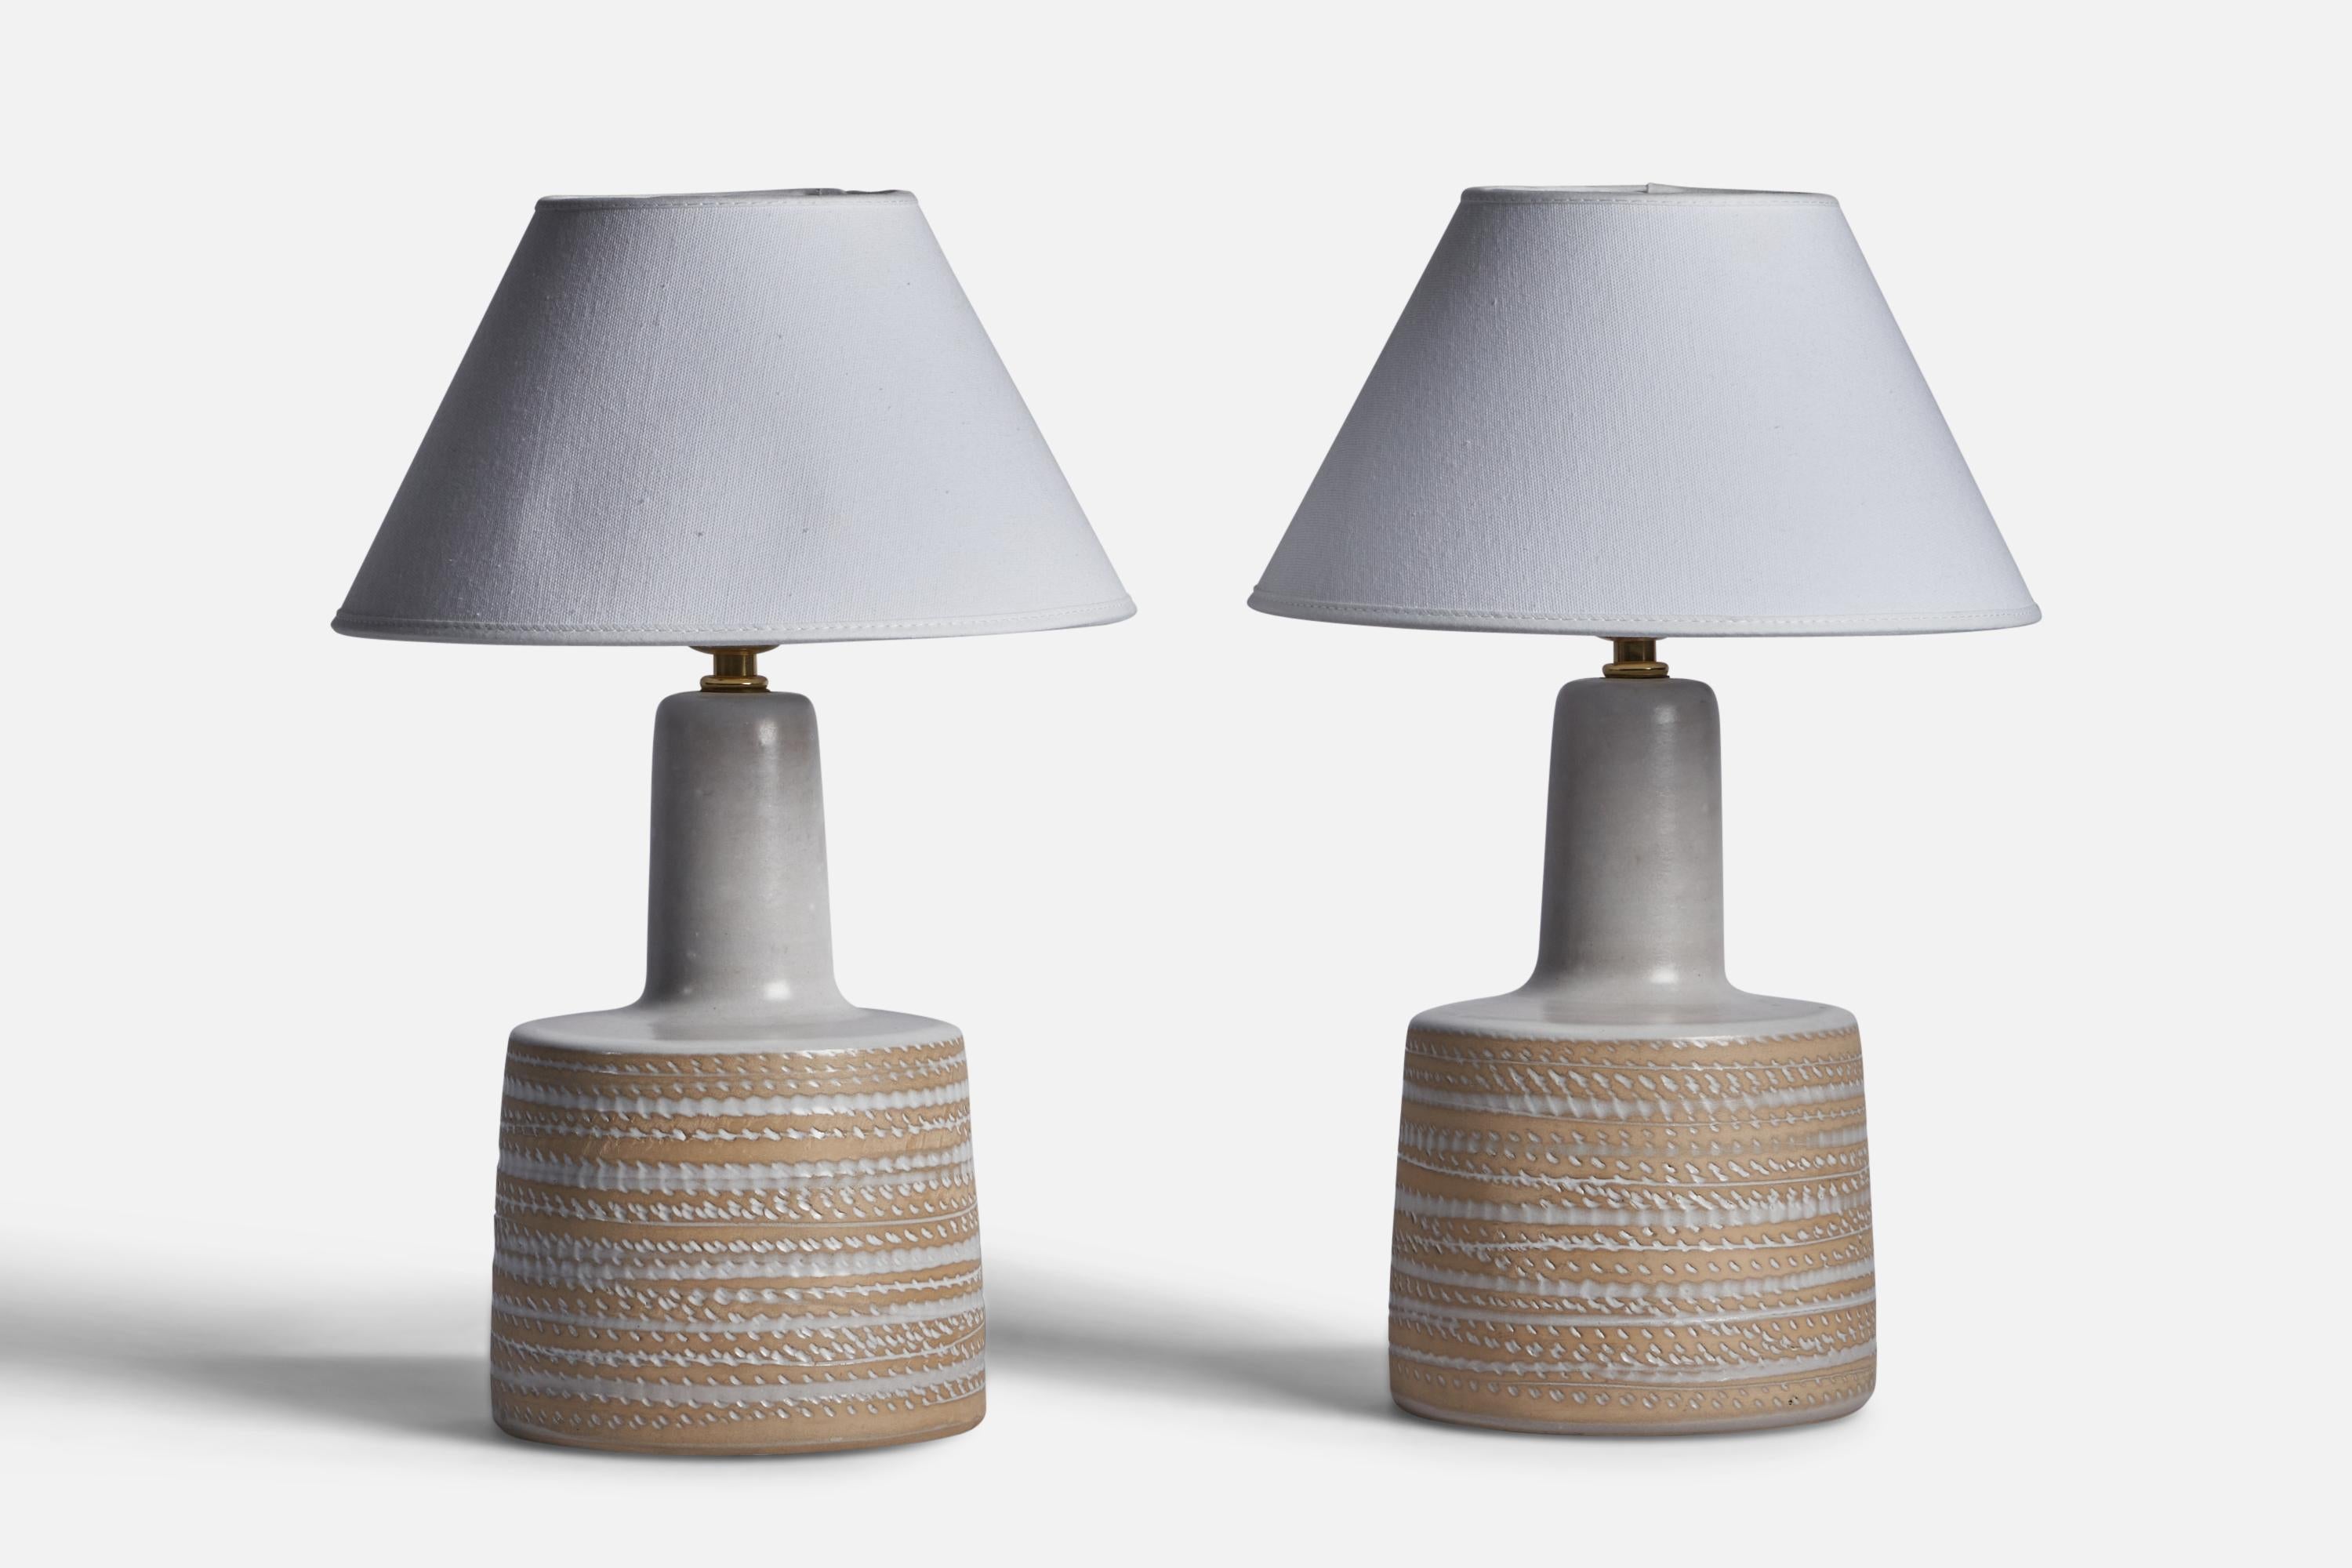 Paire de lampes de table en céramique émaillée grise et beige, conçues par Jane & Gordon Martz et produites par Marshall Studios, États-Unis, années 1960.

Dimensions de la lampe (pouces) : 12